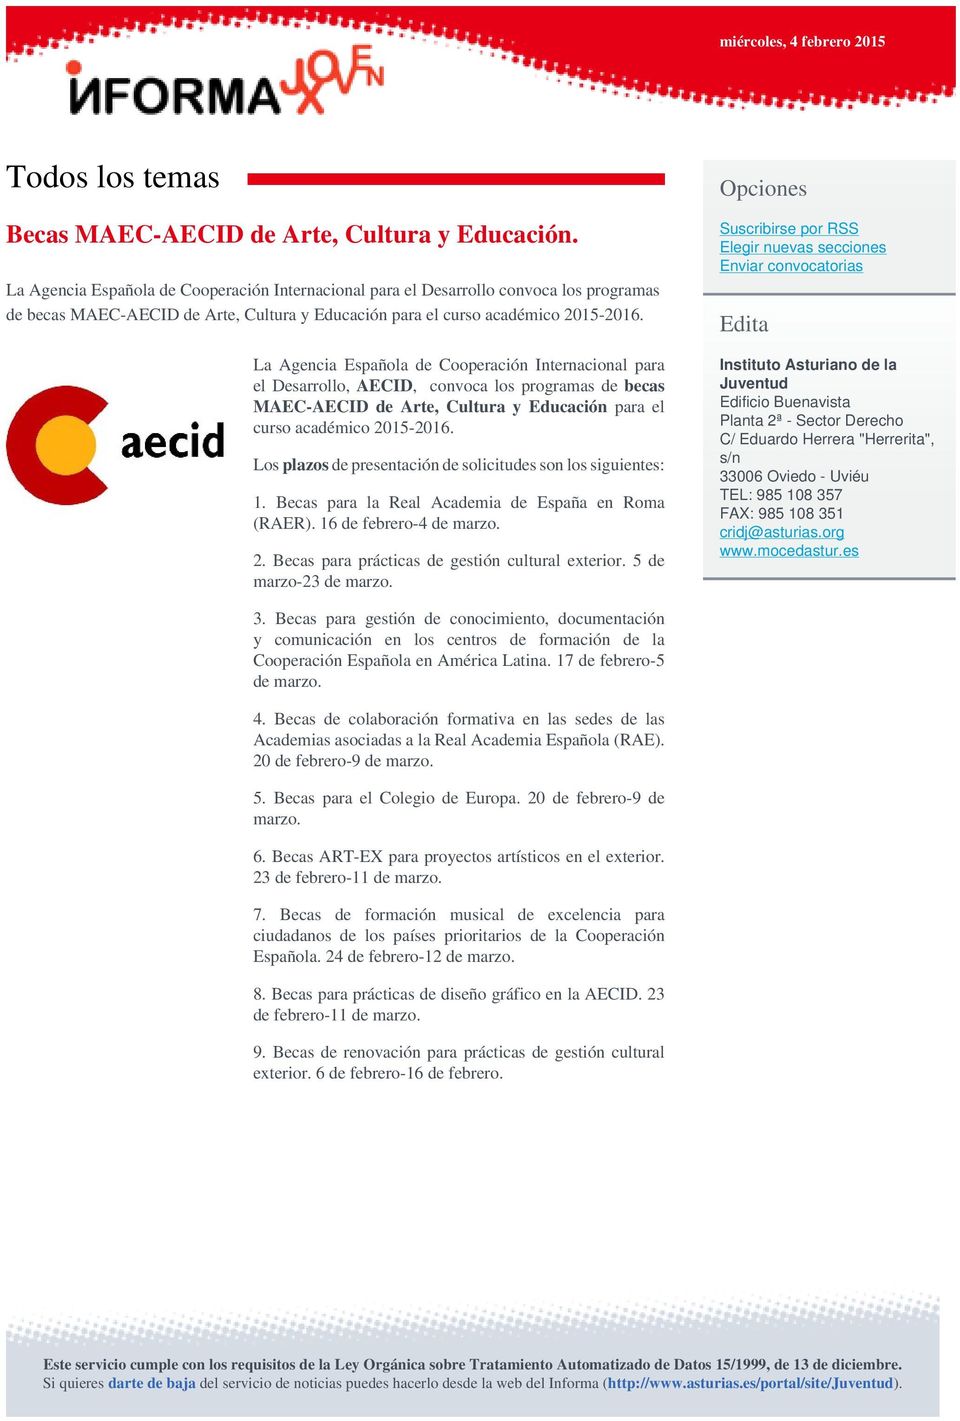 La Agencia Española de Cooperación Internacional para el Desarrollo, AECID, convoca los programas de becas MAEC-AECID de Arte, Cultura y Educación para el curso académico 2015-2016.